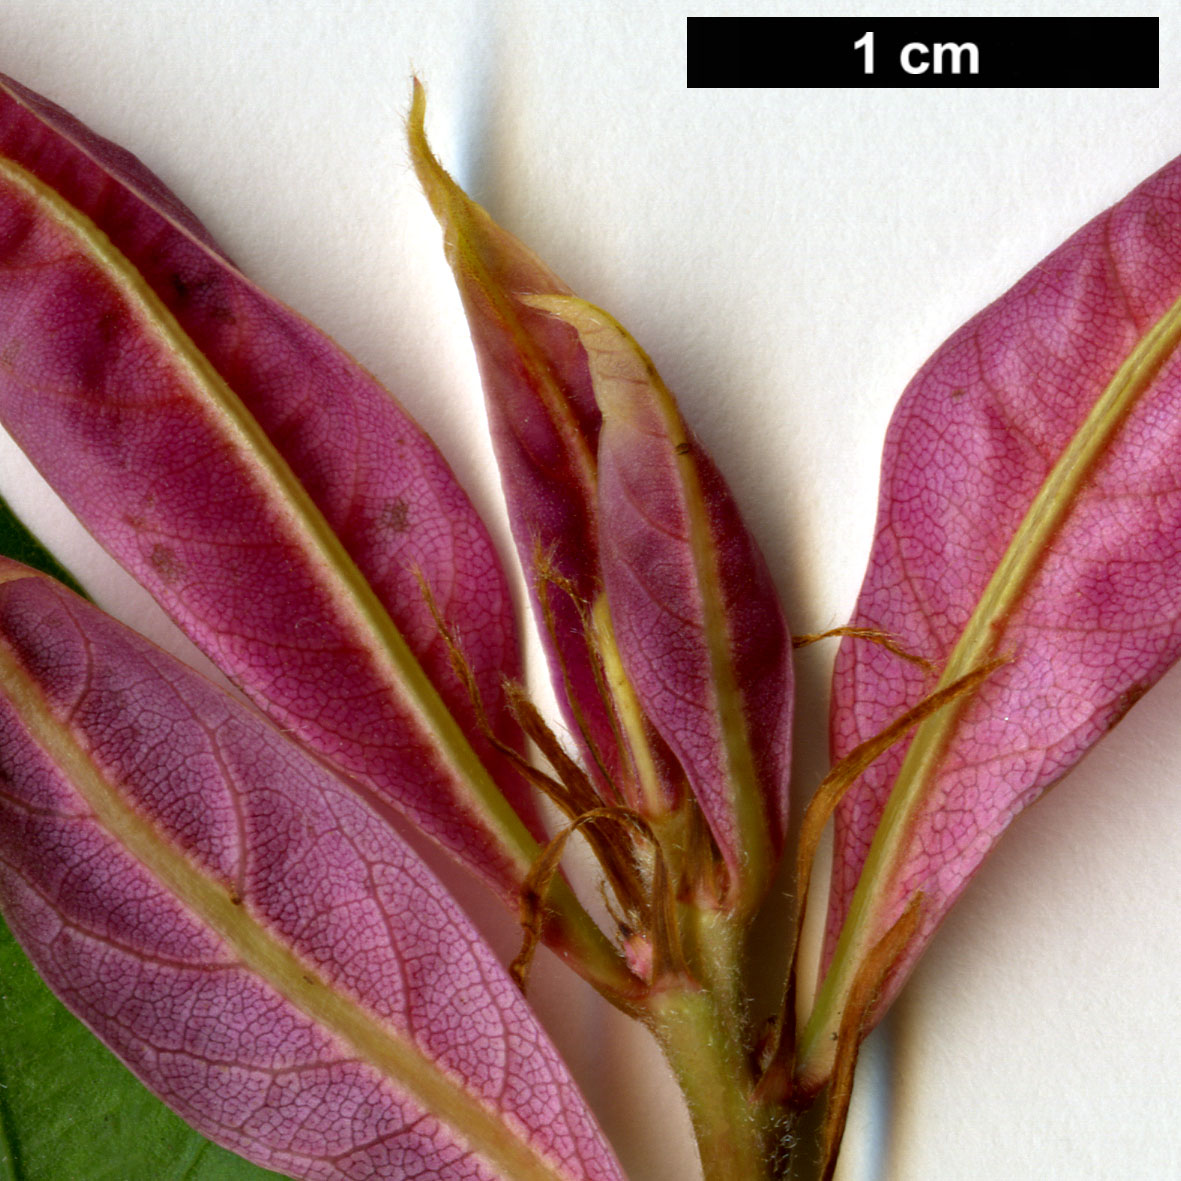 High resolution image: Family: Fagaceae - Genus: Quercus - Taxon: hondae